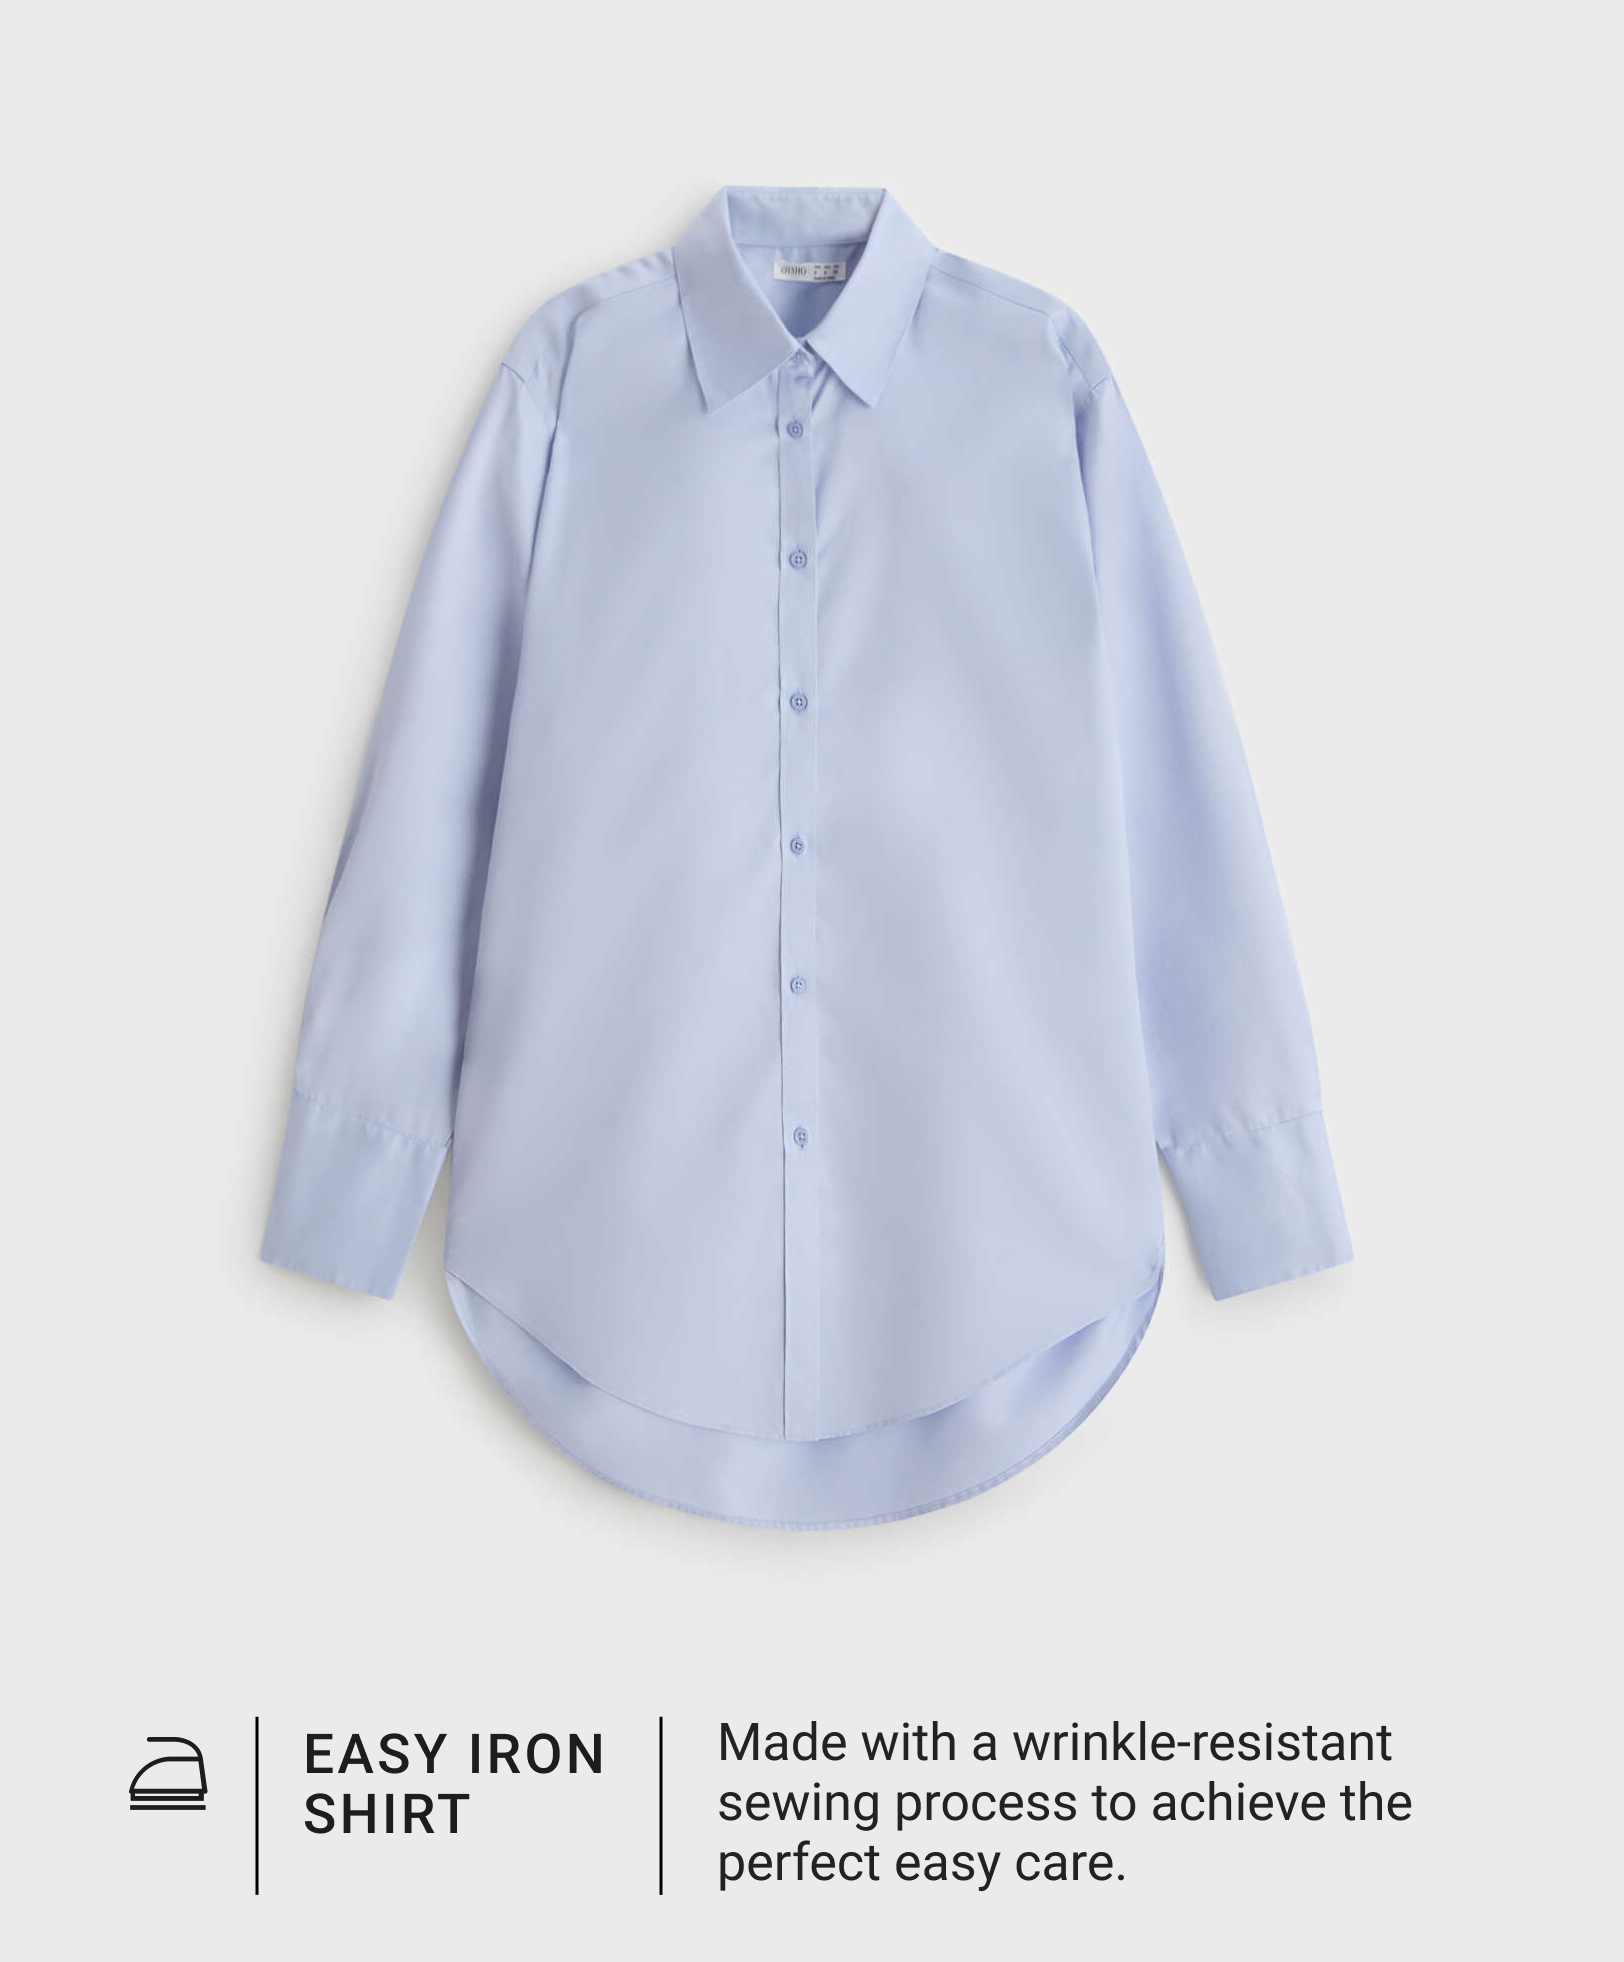 Koszula typu easy iron ze 100% bawełny